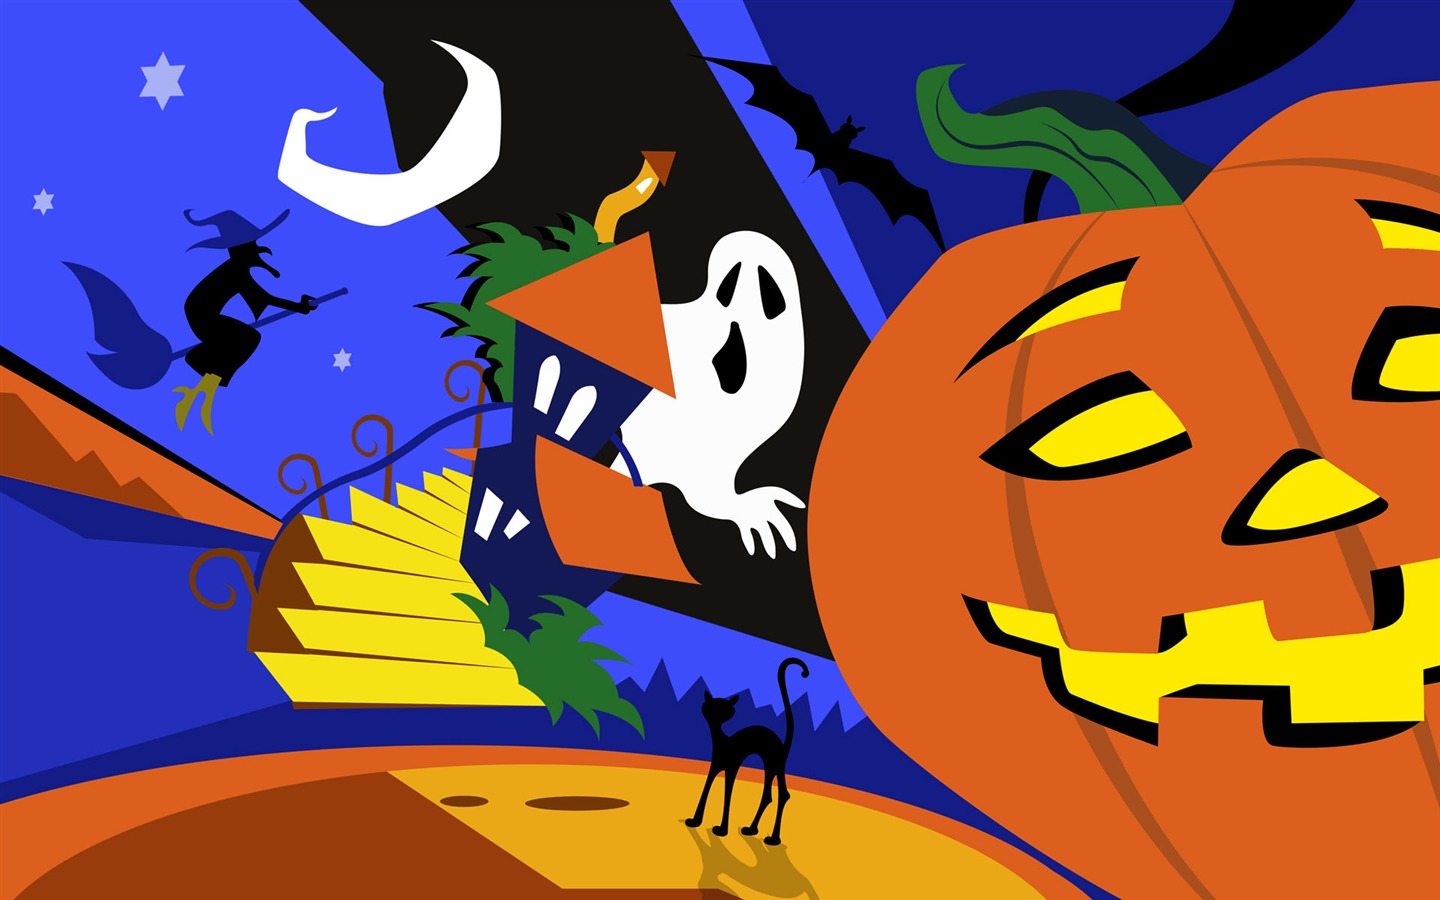 Fondos de Halloween temáticos (5) #1 - 1440x900